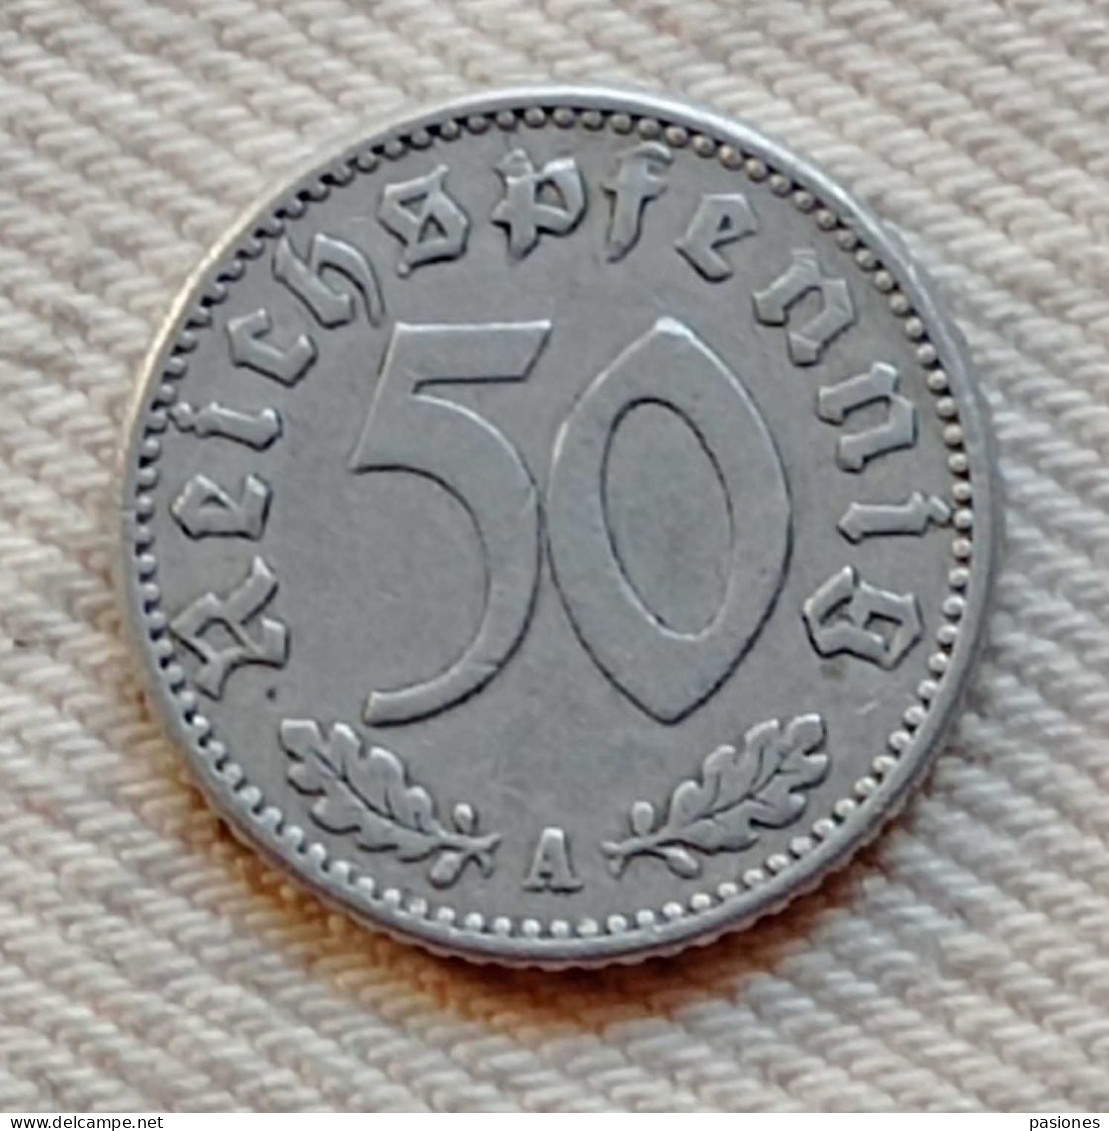 Germania 50 Reichspfennig 1940A - 50 Reichspfennig